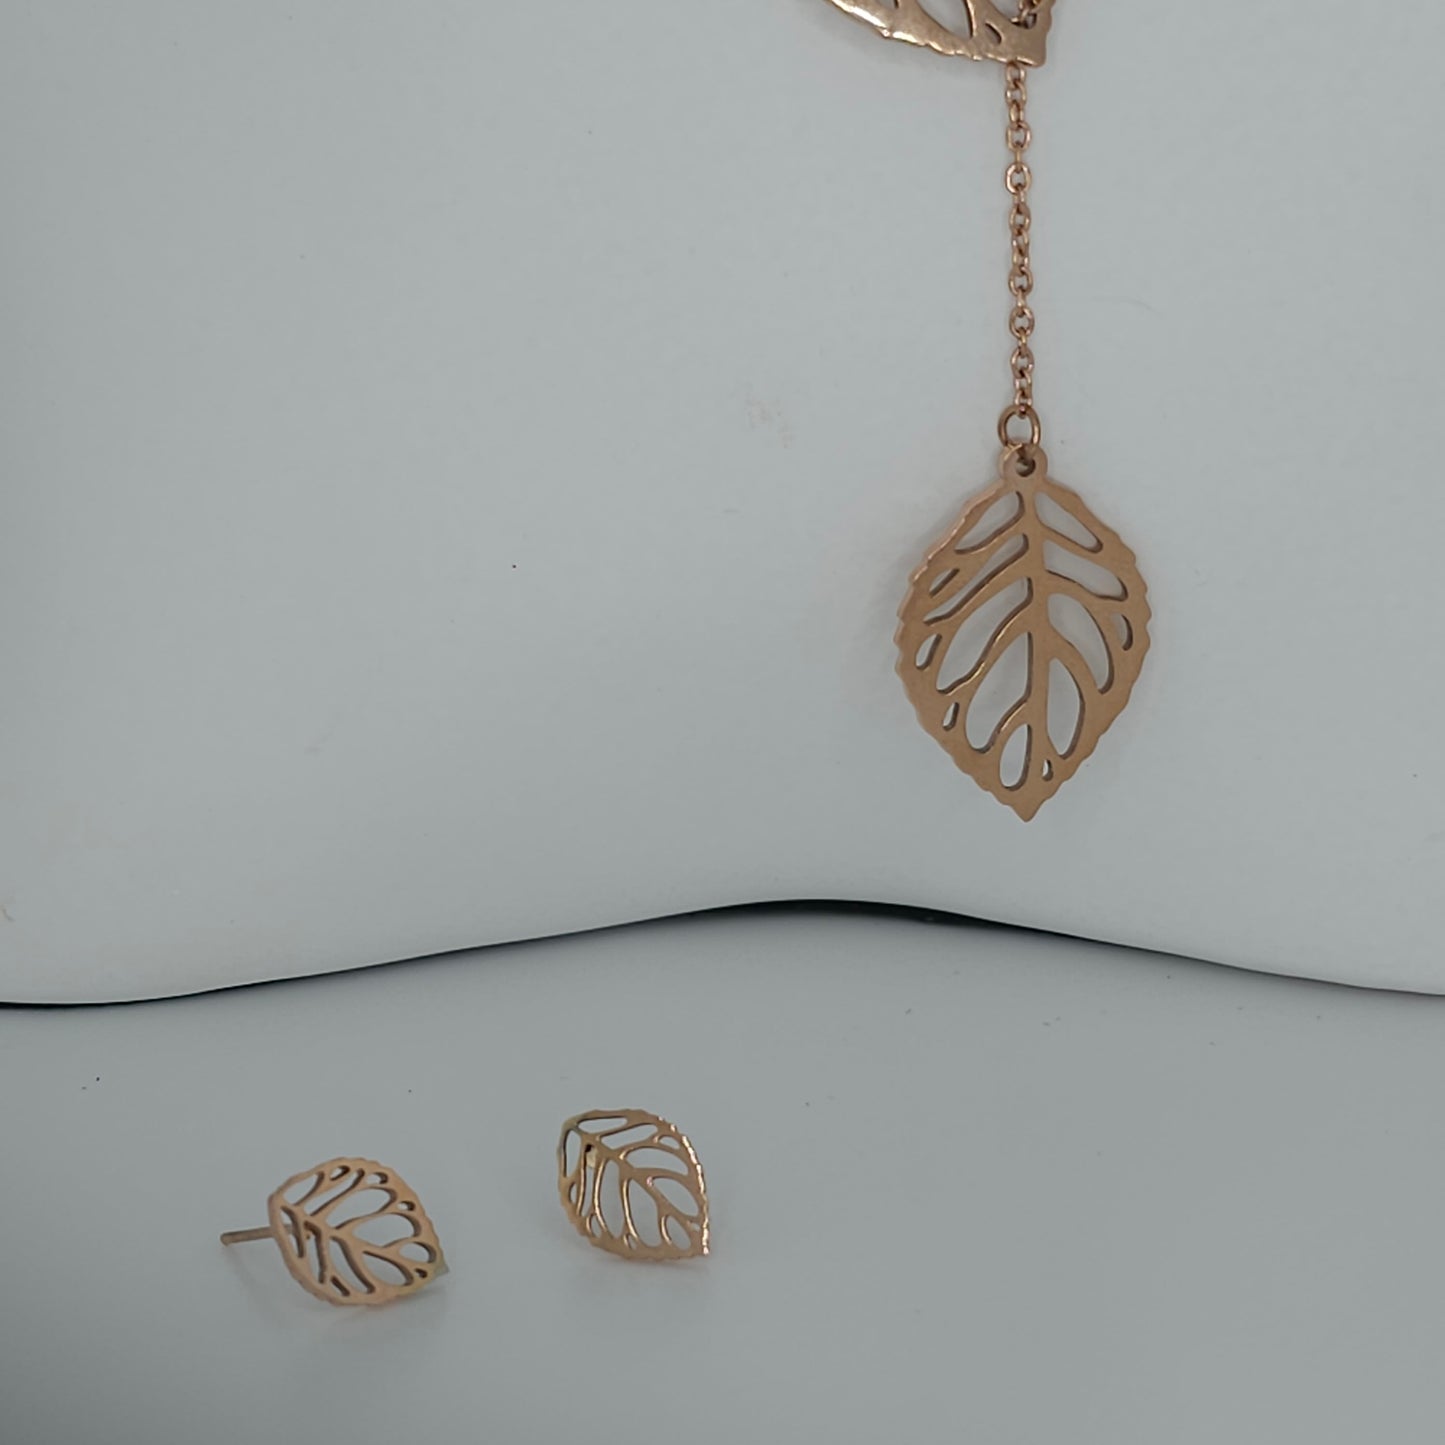 Leaf chain and earrings set